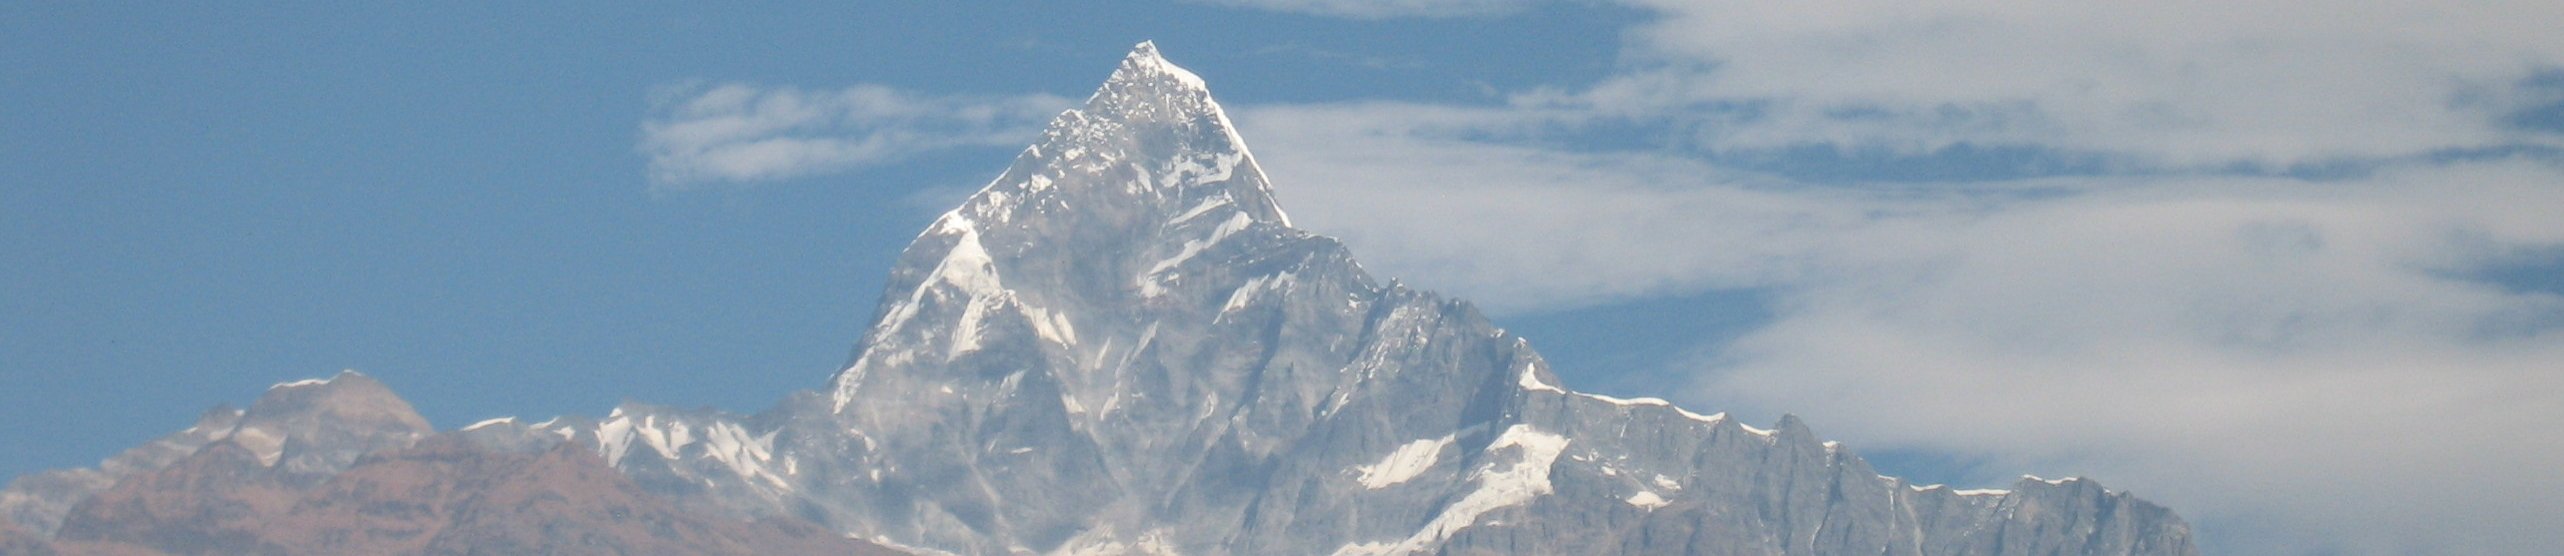 ネパール banner image